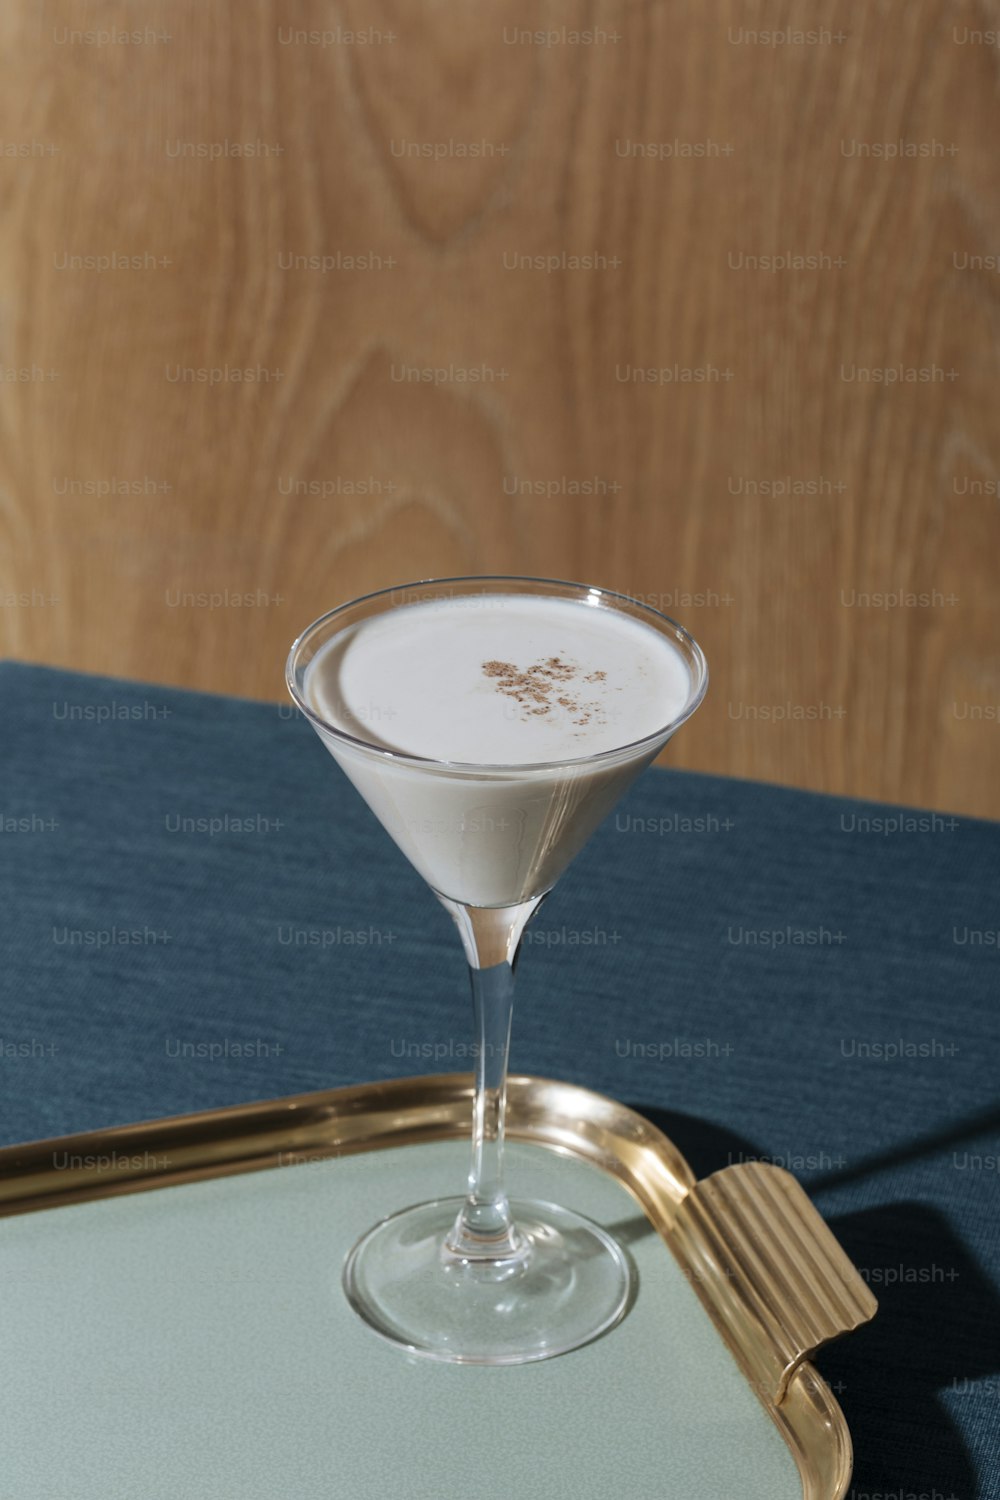 Un cocktail dopo cena con gin o cognac, crème de cacao bianco, panna fresca e noce moscata grattugiata.